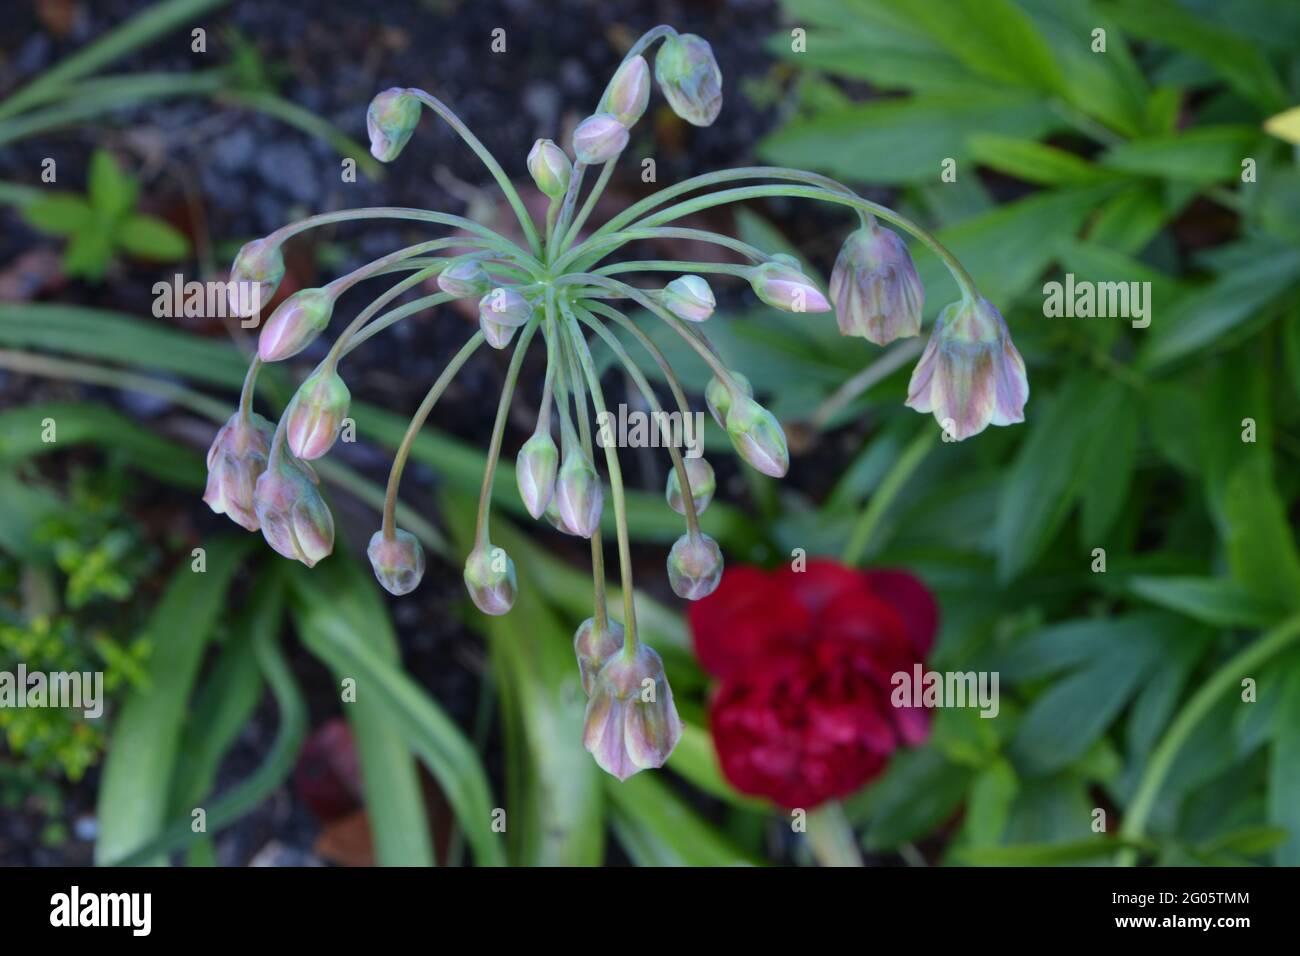 Lilie, Paeonia, Paeonia Red, Pfingstrose, Pfingstrose, Double Red Peony Cambridge UK, rein schöner und friedlicher Blumenraum Stockfoto